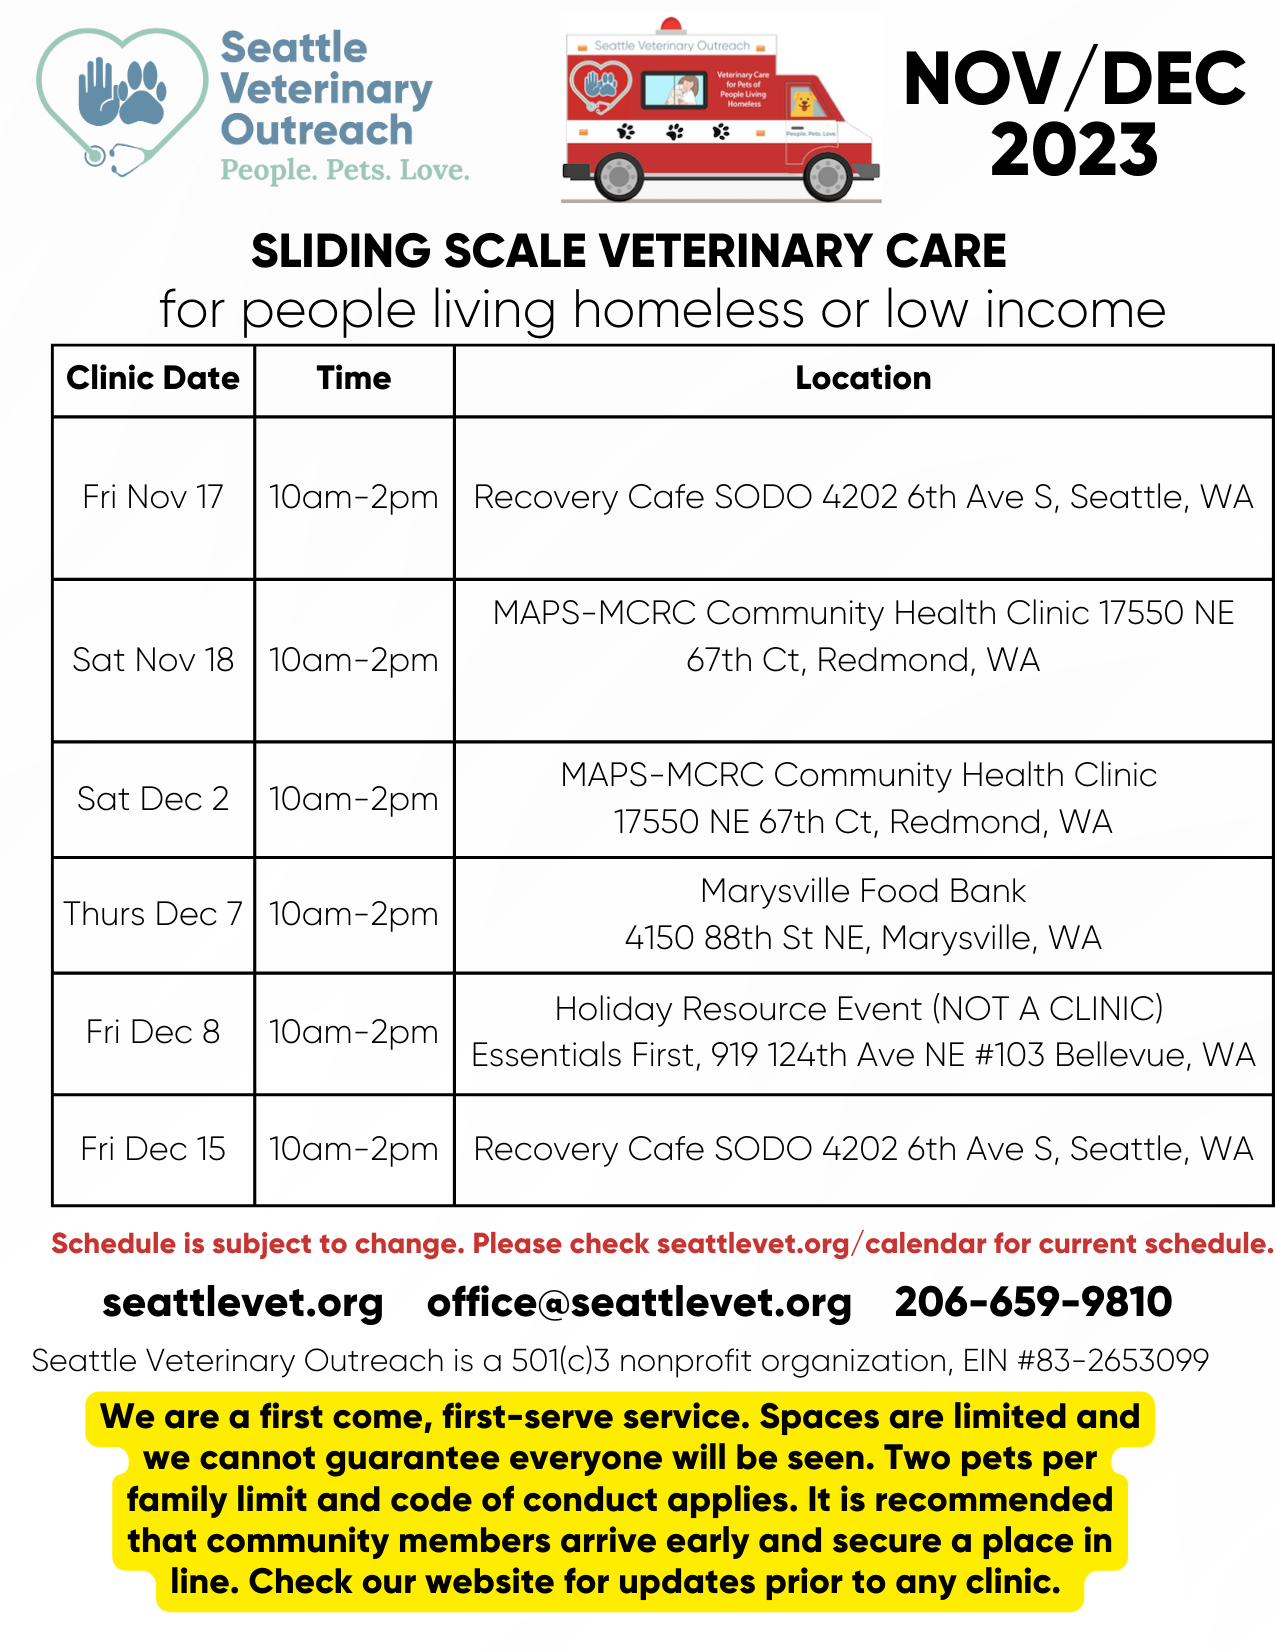 Seattle Veterinary Outreach Calendar Nov/Dec 2023